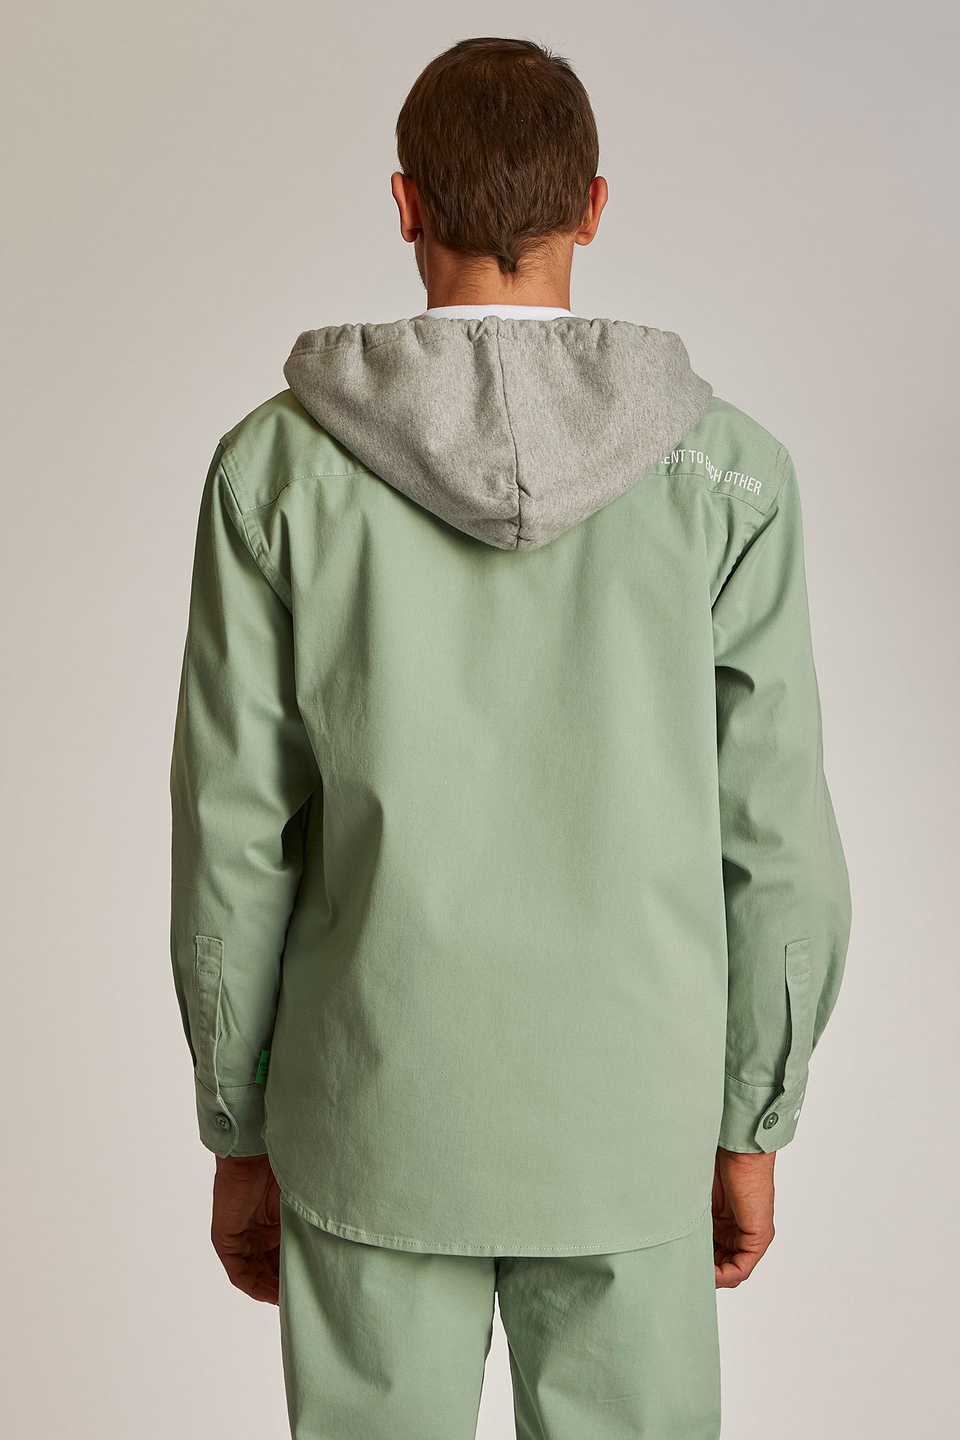 Veste homme 100% coton, à capuche et coupe oversize | La Martina - Official Online Shop